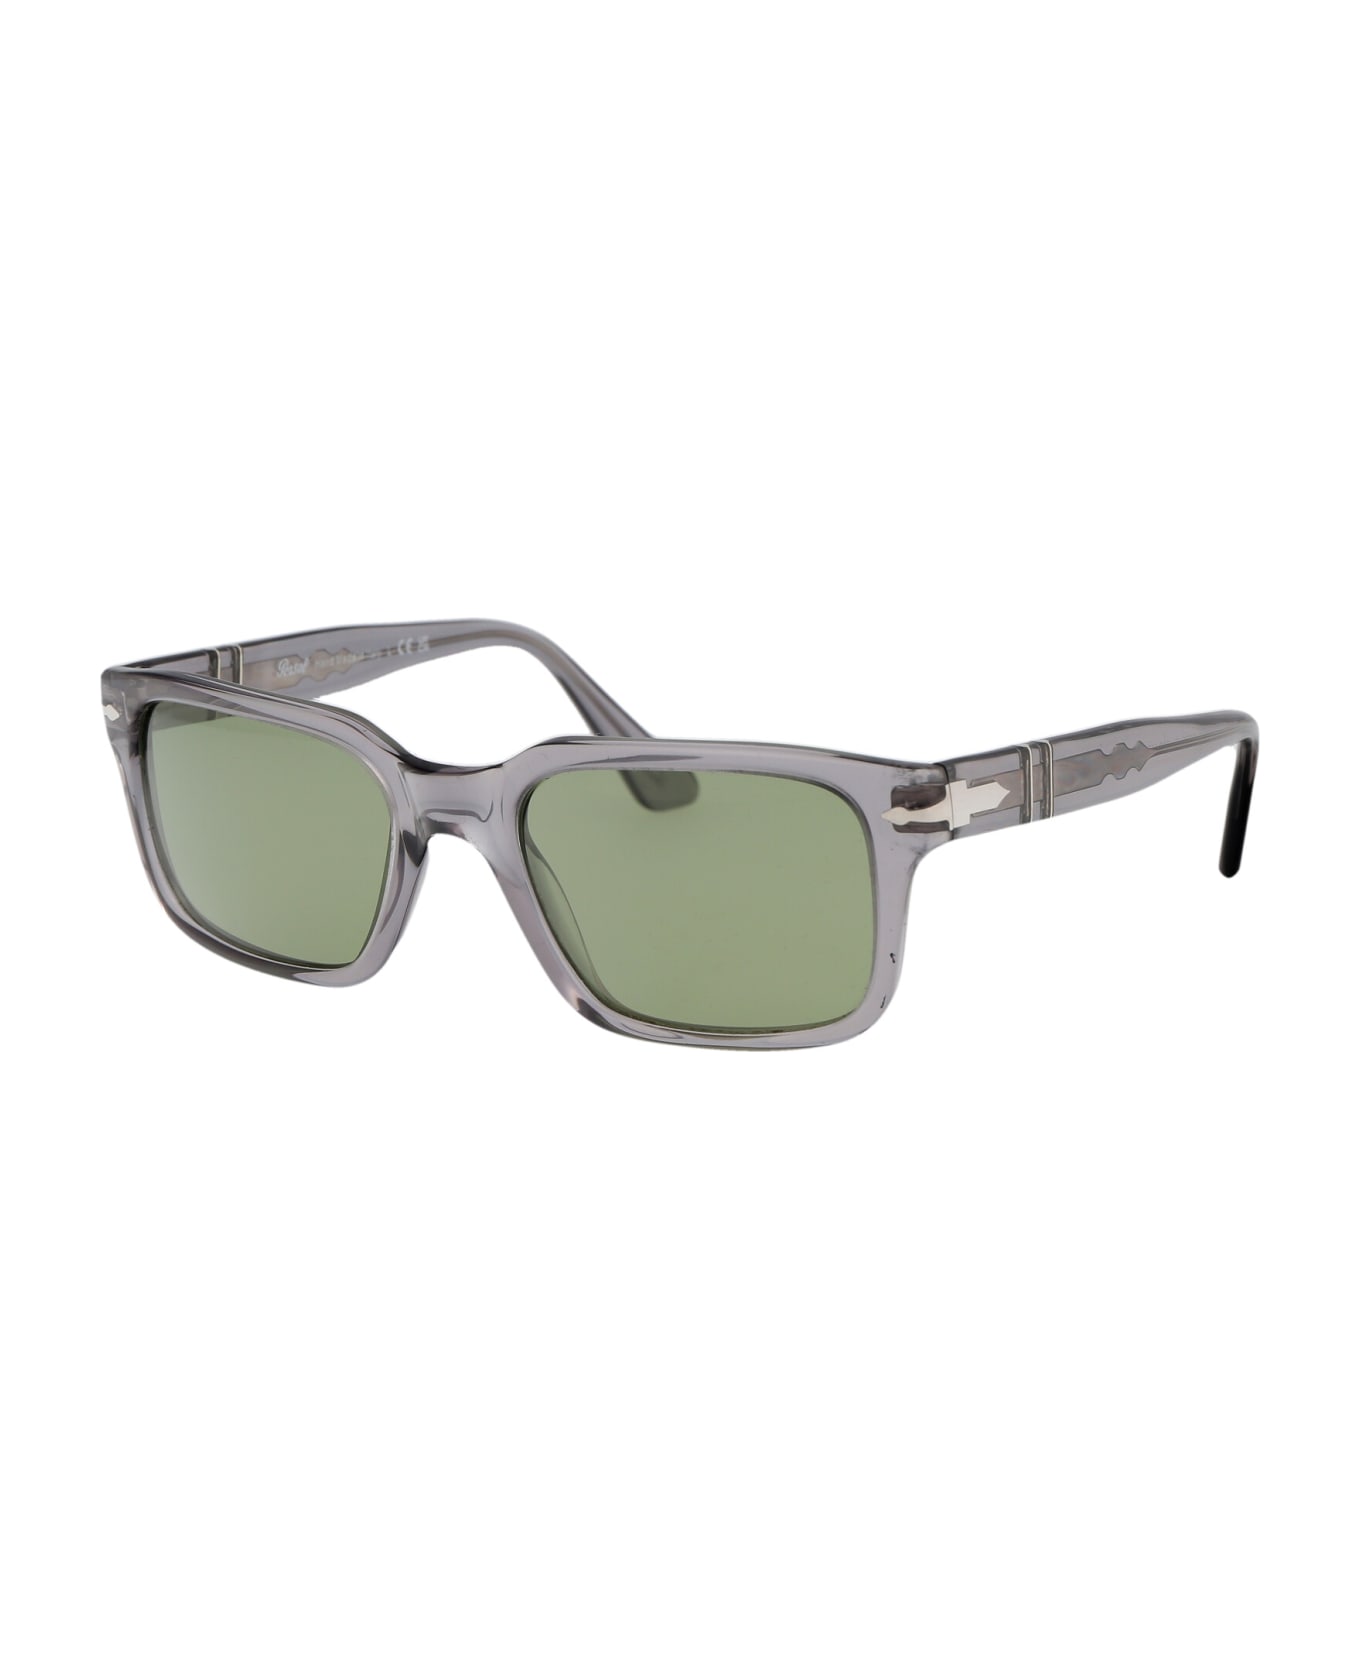 Persol 0po3272s Sunglasses - 309/4E TRANSPARENT GREY